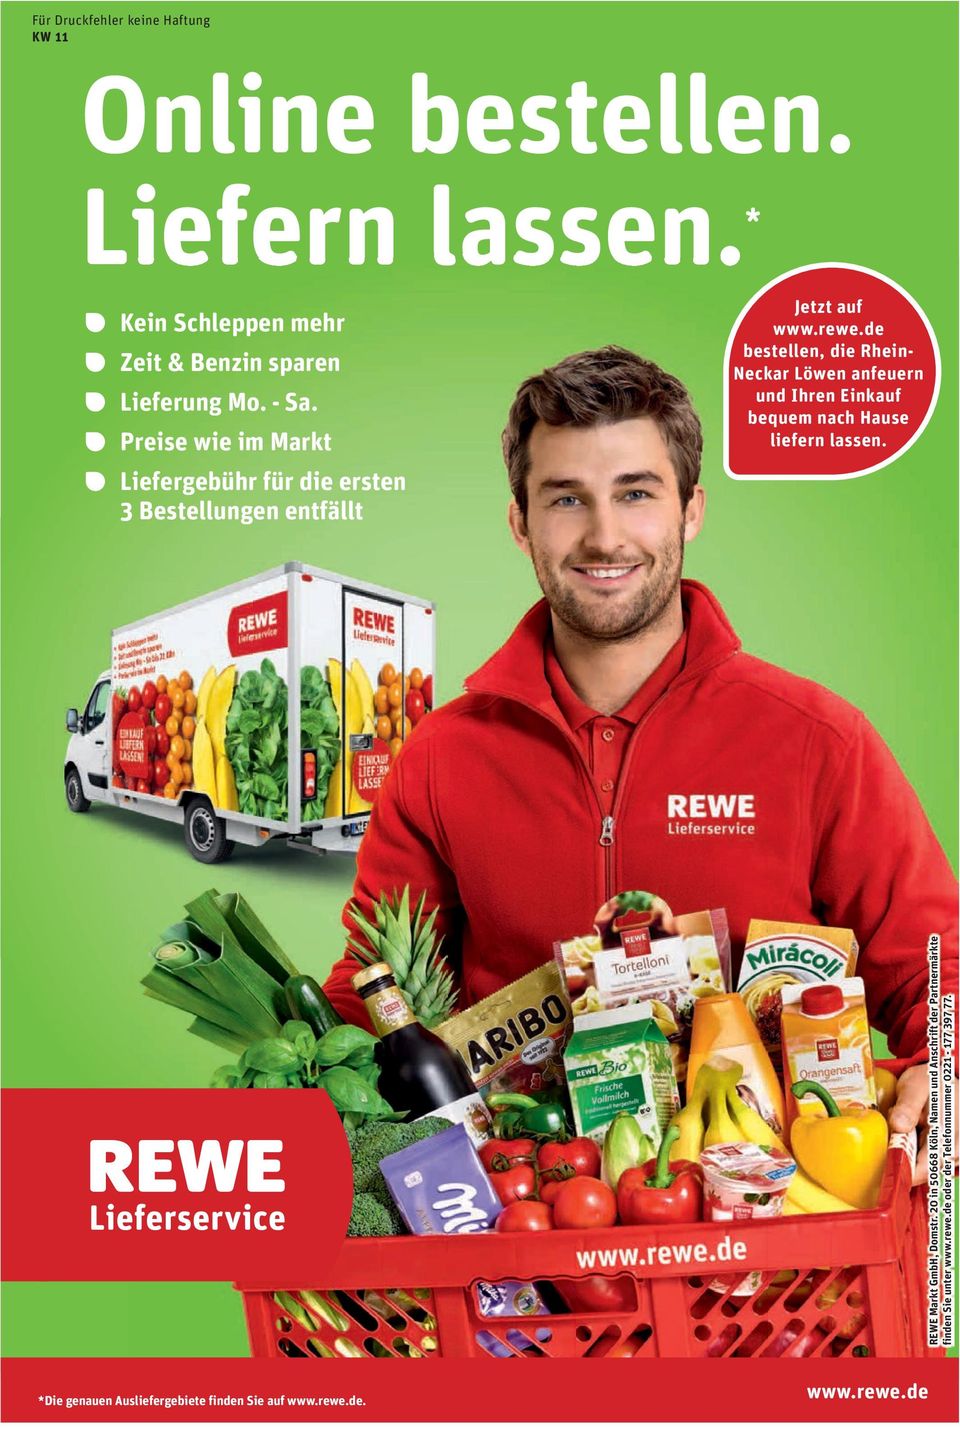 de bestellen, die Rhein- Neckar Löwen anfeuern und Ihren Einkauf bequem nach Hause liefern lassen. REWE Markt GmbH, Domstr.